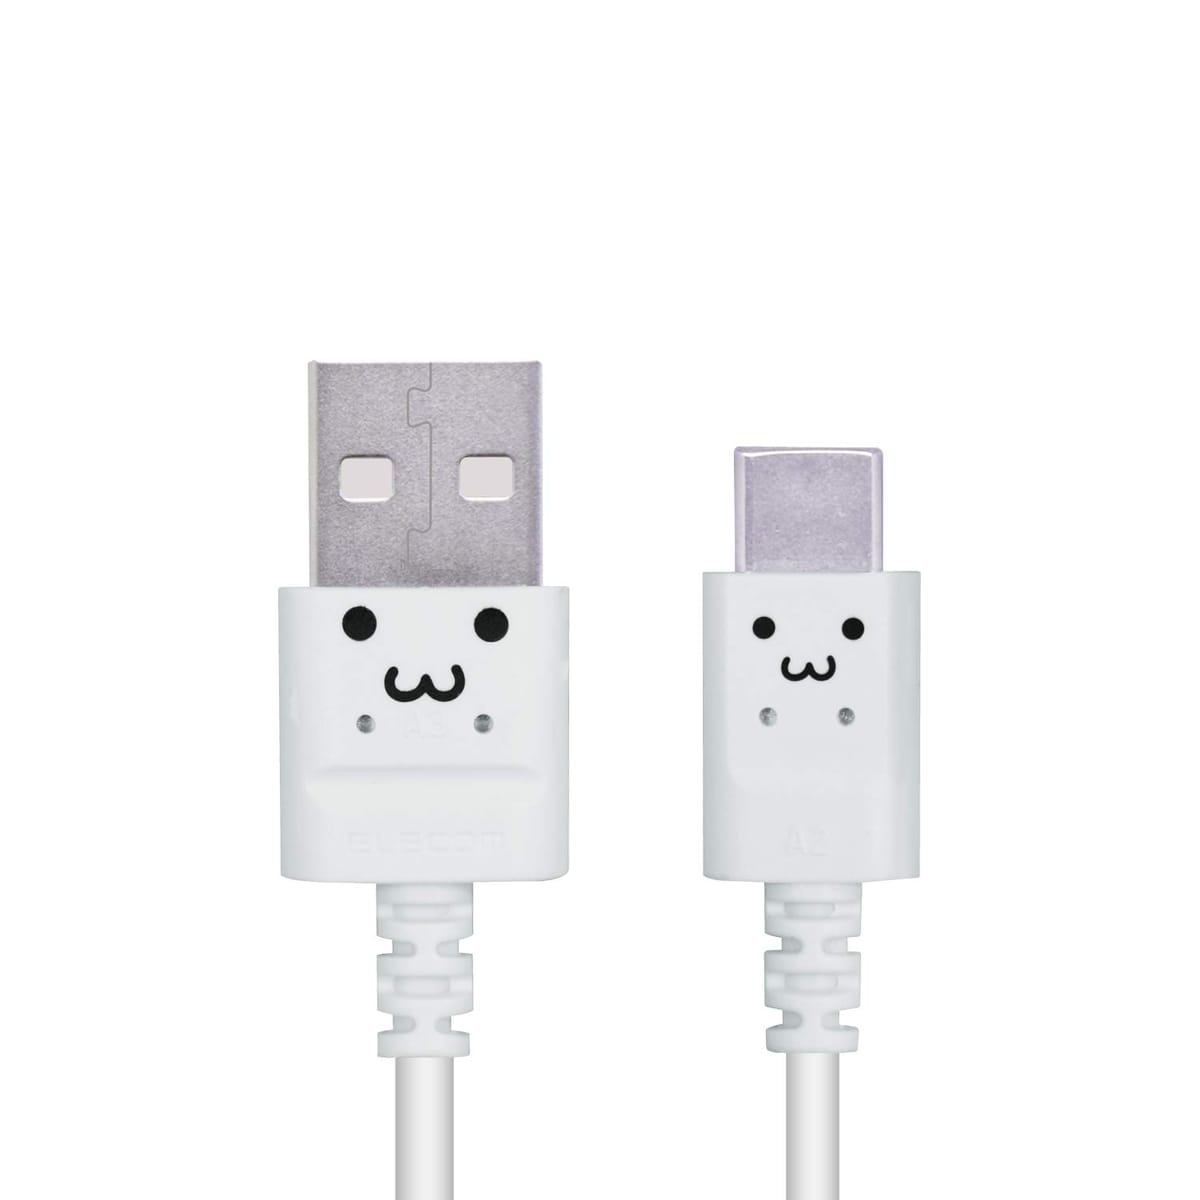 エレコム USB TYPE C ケーブル (USB A-USB C) 3A出力で超急速充電 USB2.0 正規認証品 タイプC 0.3m ホワイトフェイス MPA-ACXCL03NWF